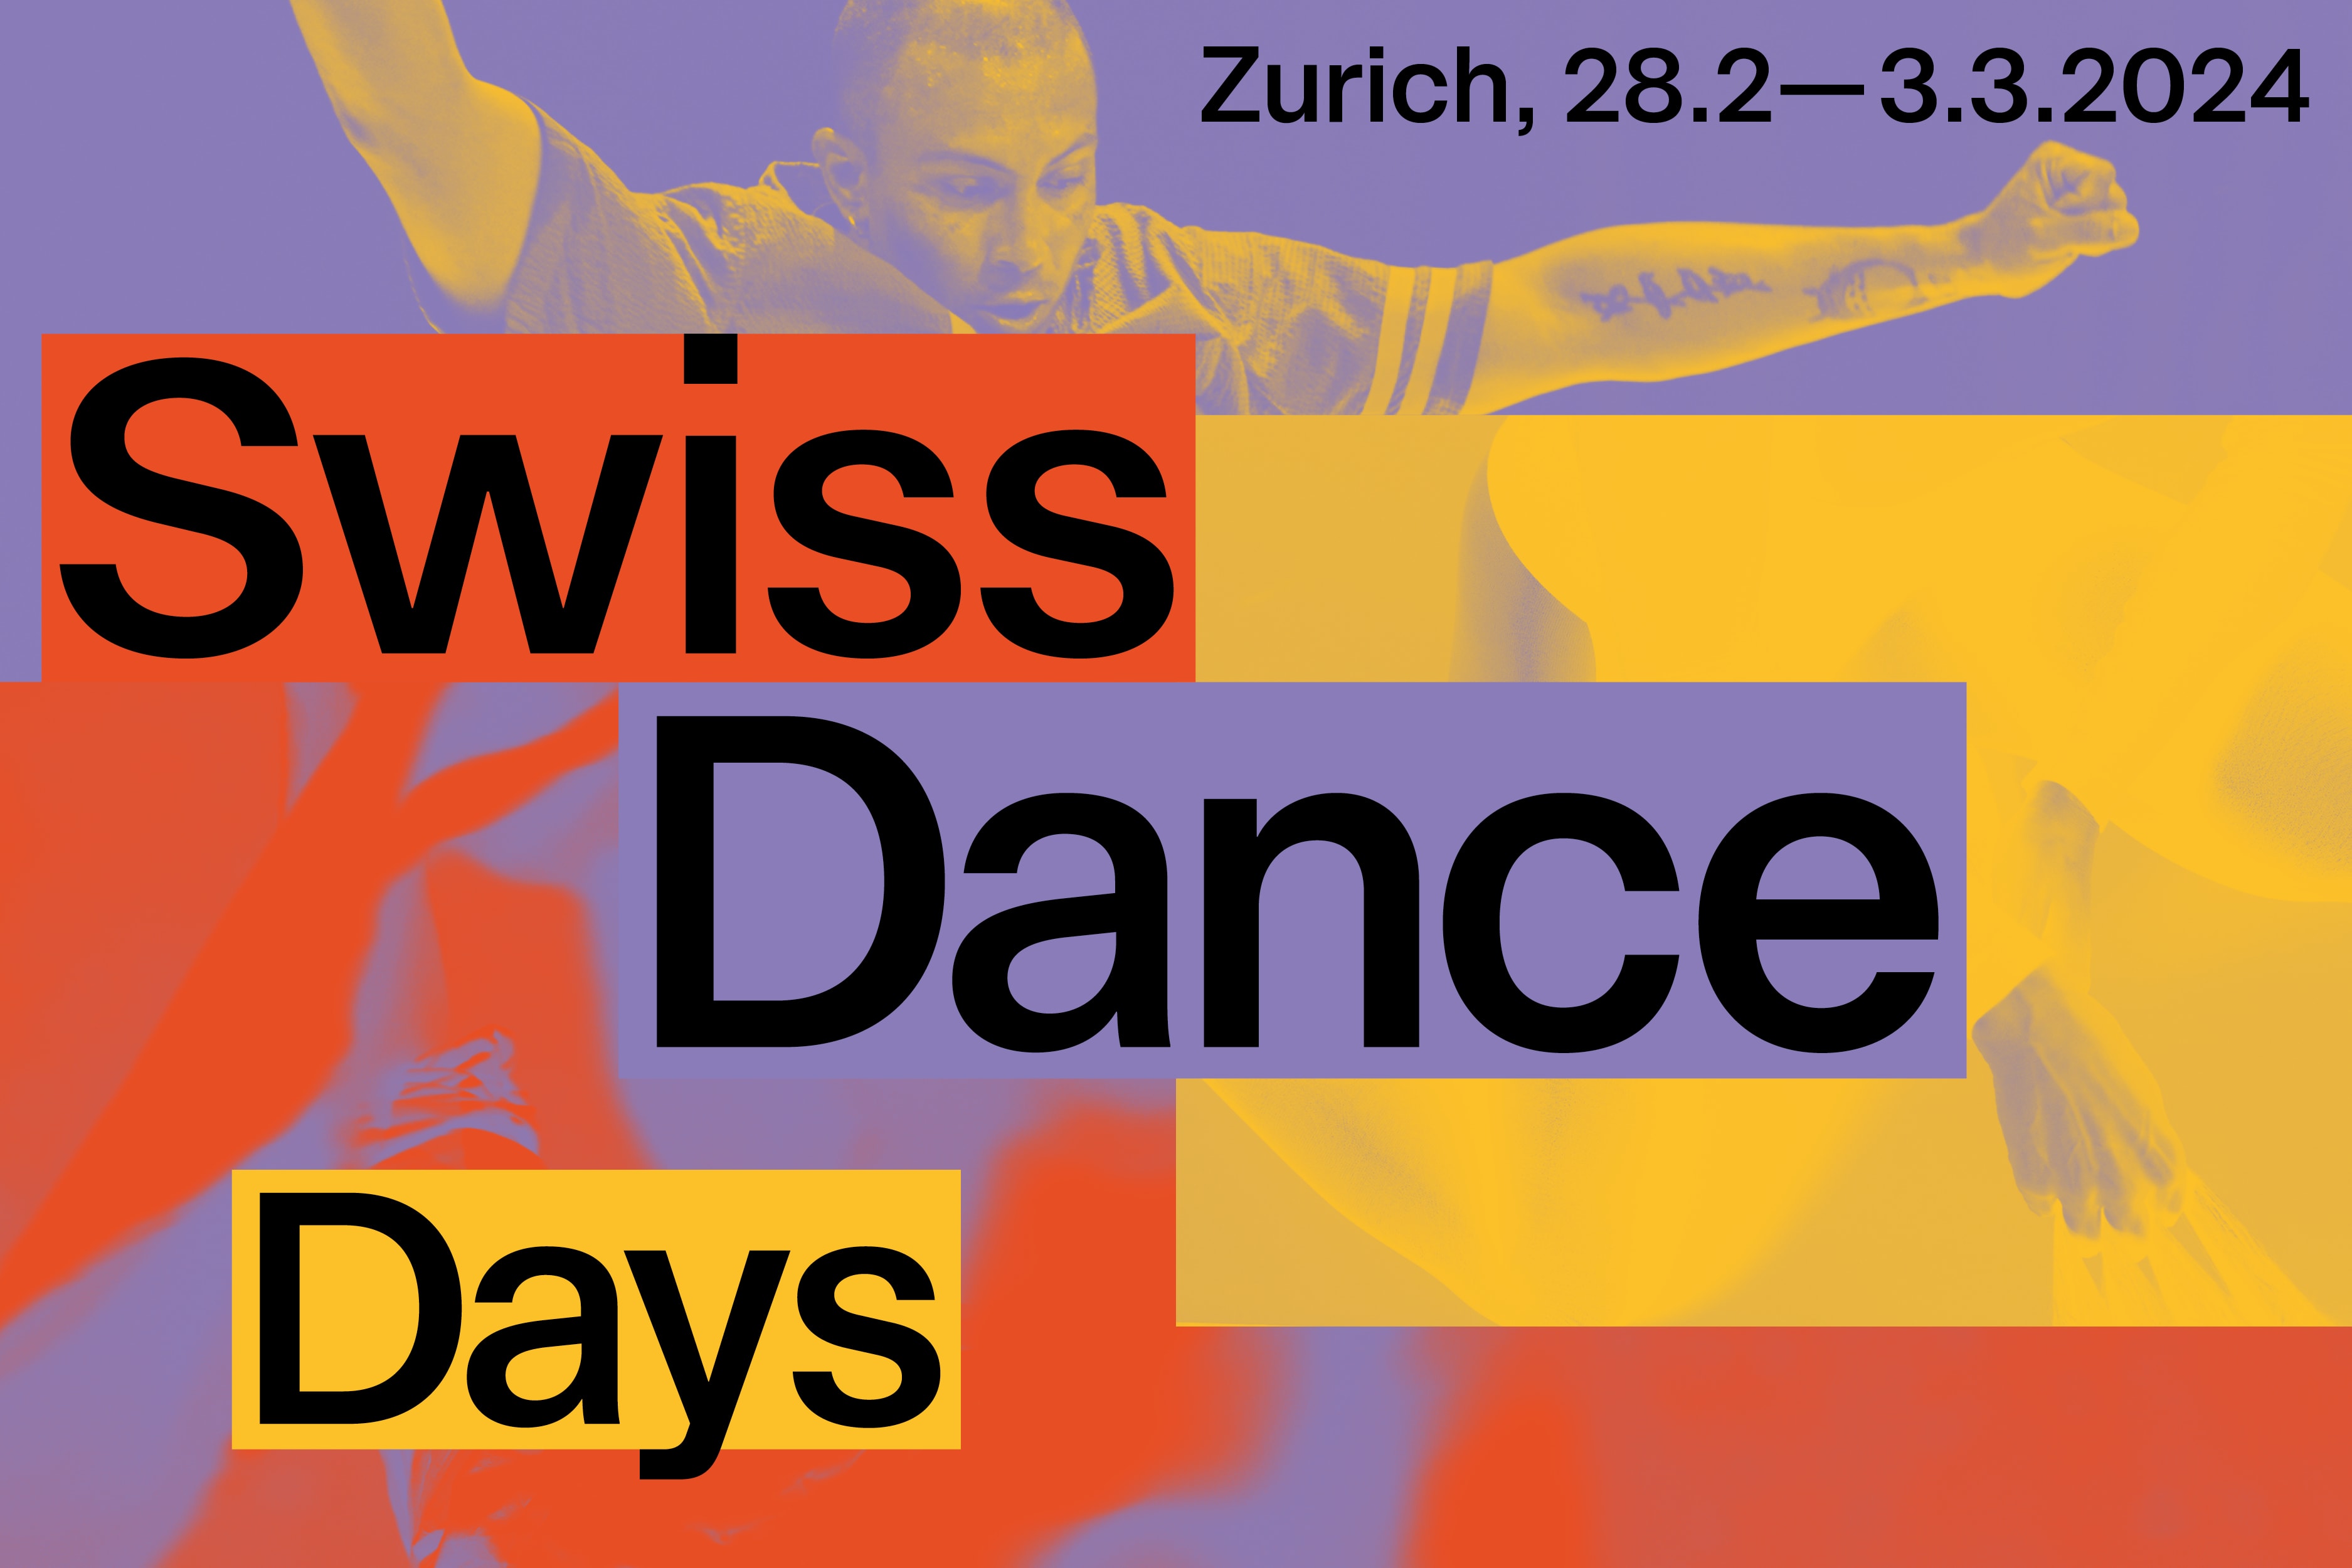 Swiss Dance Days News European Dancehouse Network